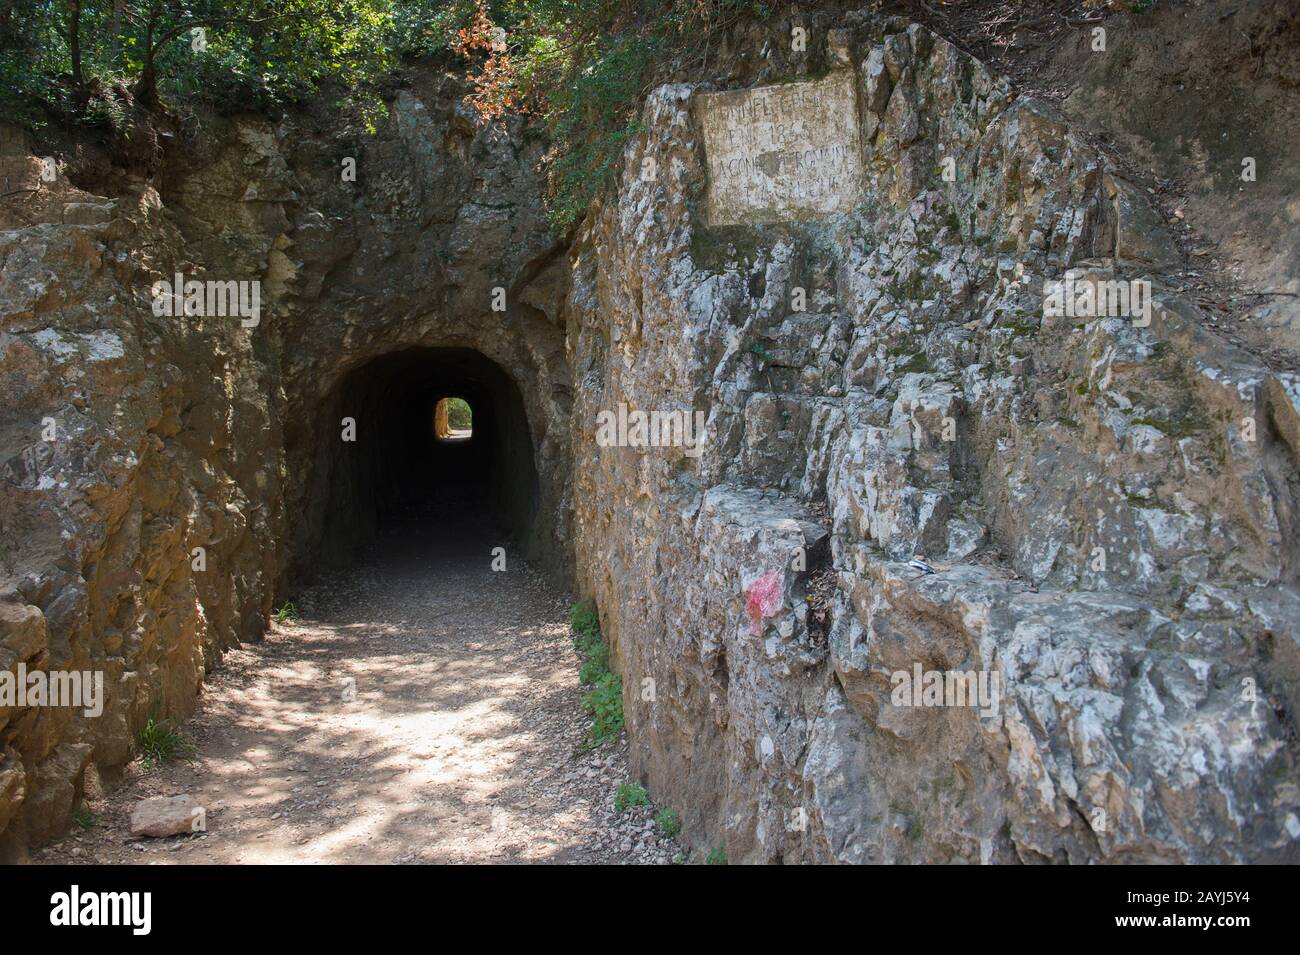 Blick in den Tunnel des 1865 erbauten Pouzin am Pont du Gard bei Nimes im Süden Frankreichs. Stockfoto